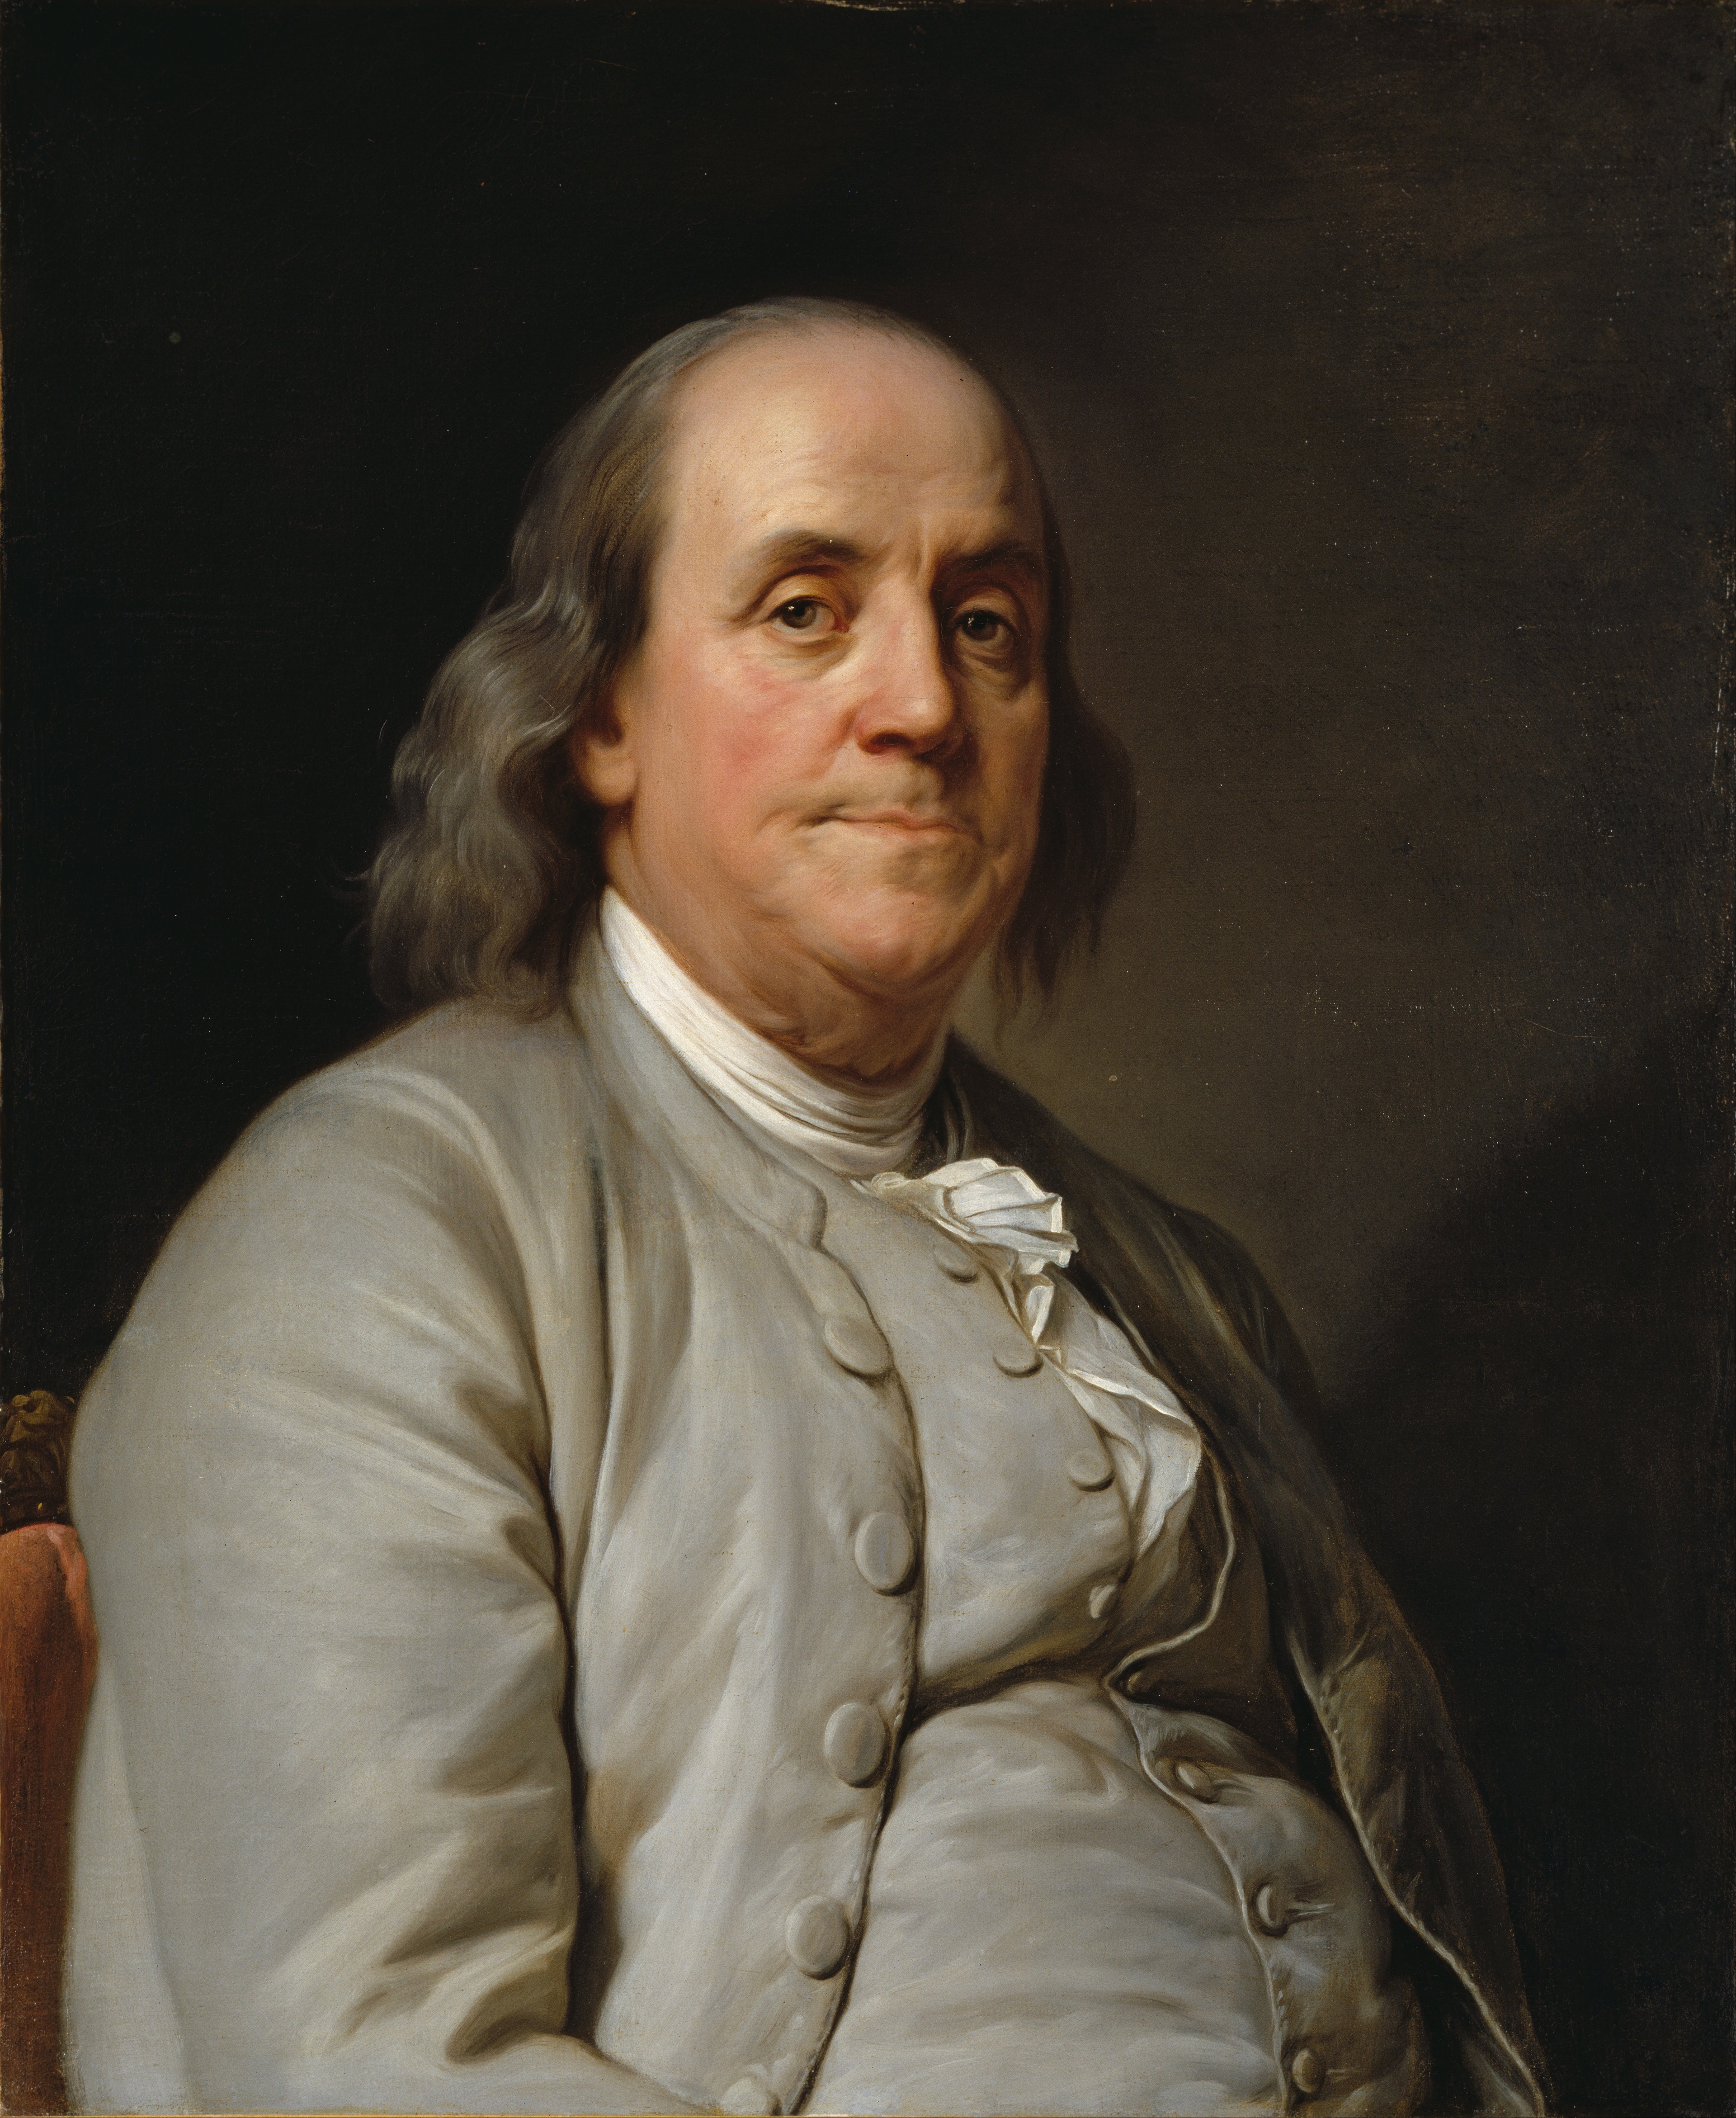 auteur Benjamin Franklin de la citation A vingt ans la volonté règne ; à trente ans, l'esprit; et à quarante ans, le jugement.